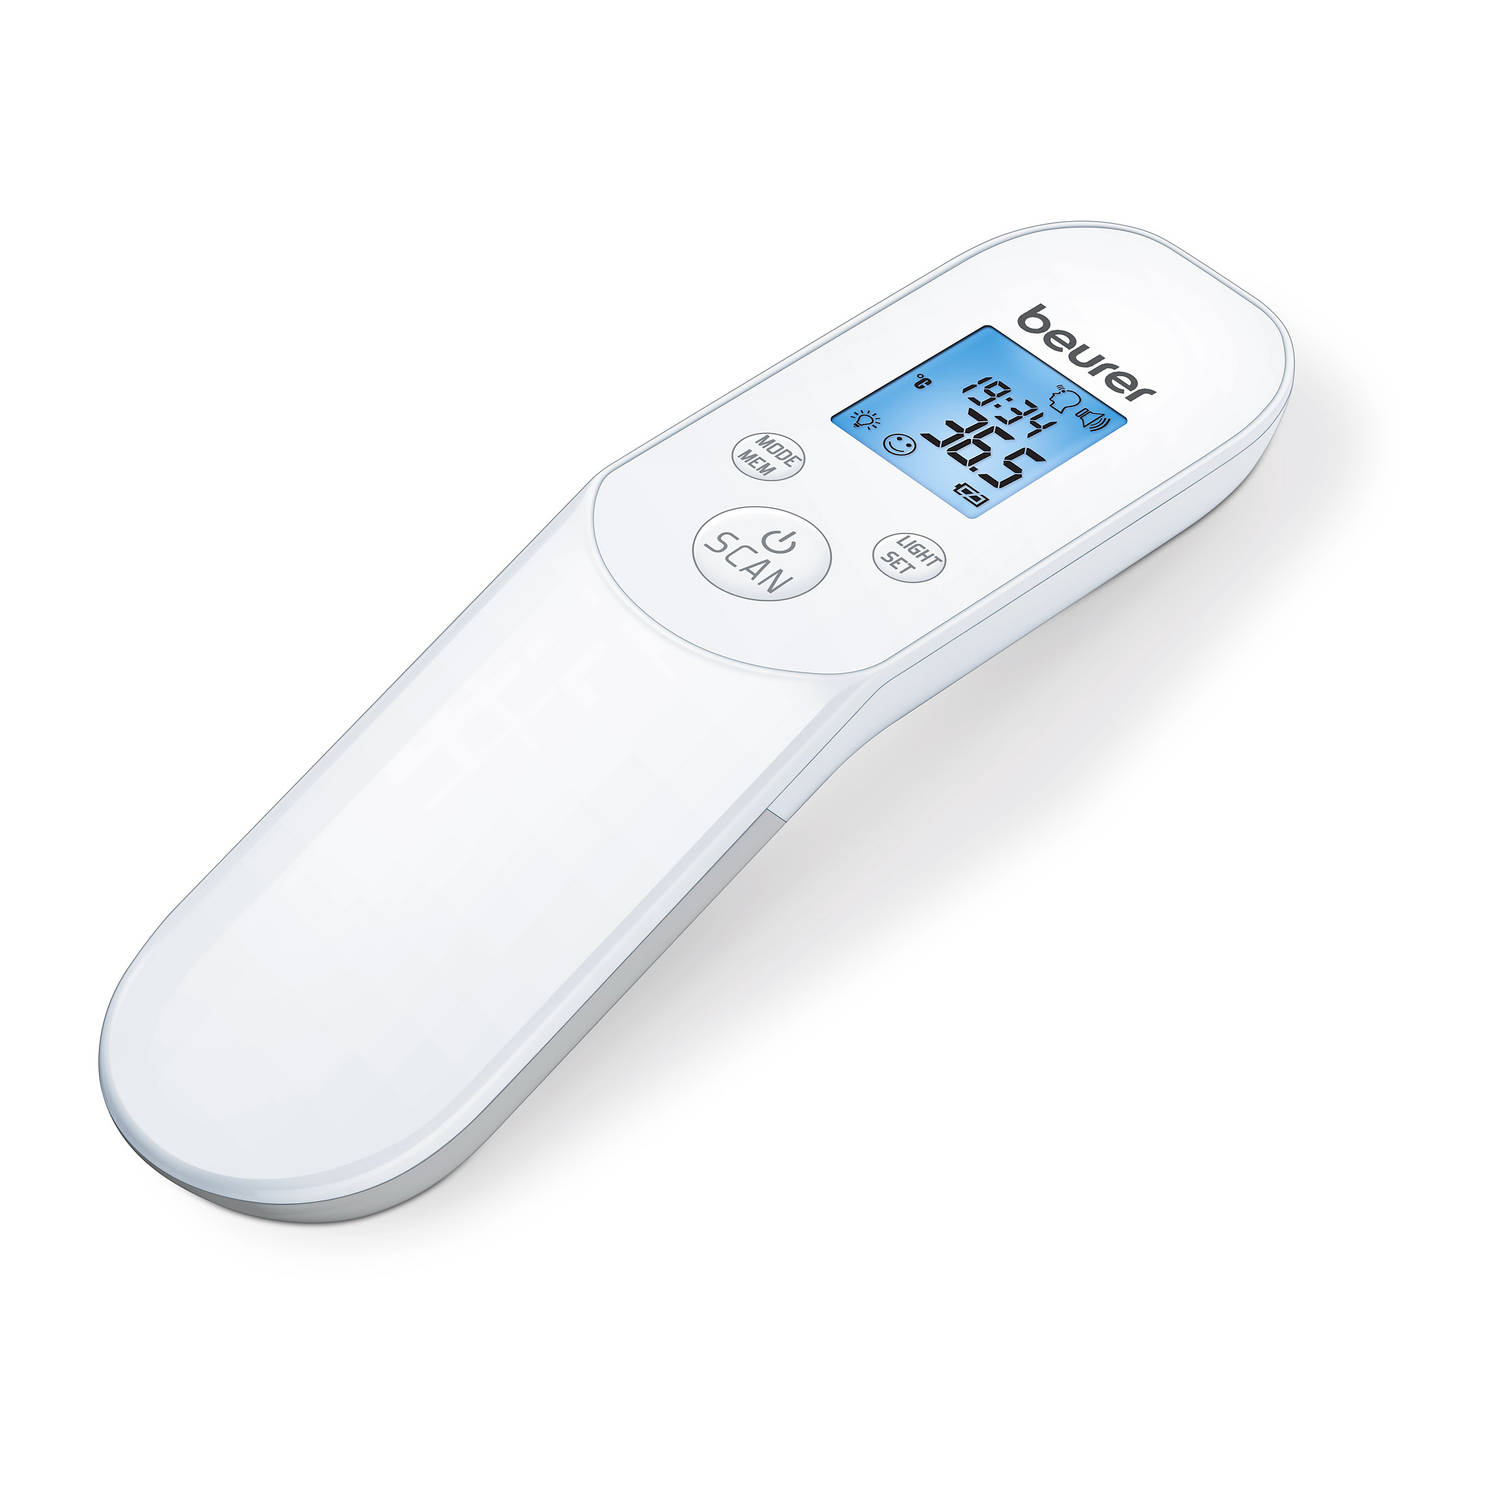 Beurer FT85 - Thermometer - Contactloos, hygiënisch en veilig - Infrarood